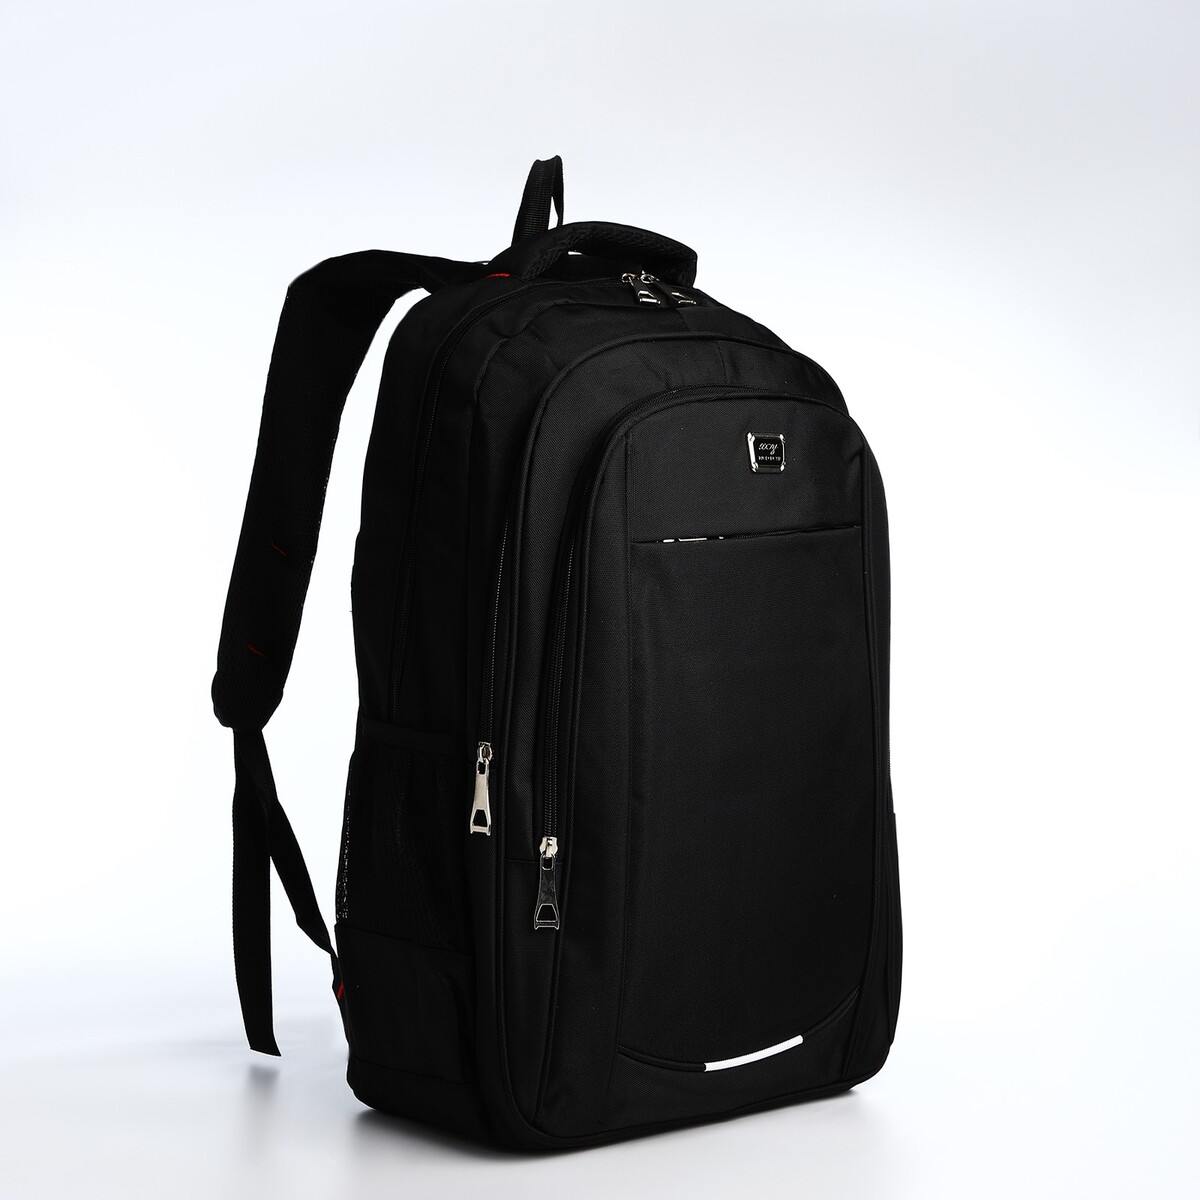 Рюкзак молодежный из текстиля, 2 отдела на молнии, 4 кармана, цвет черный/серый